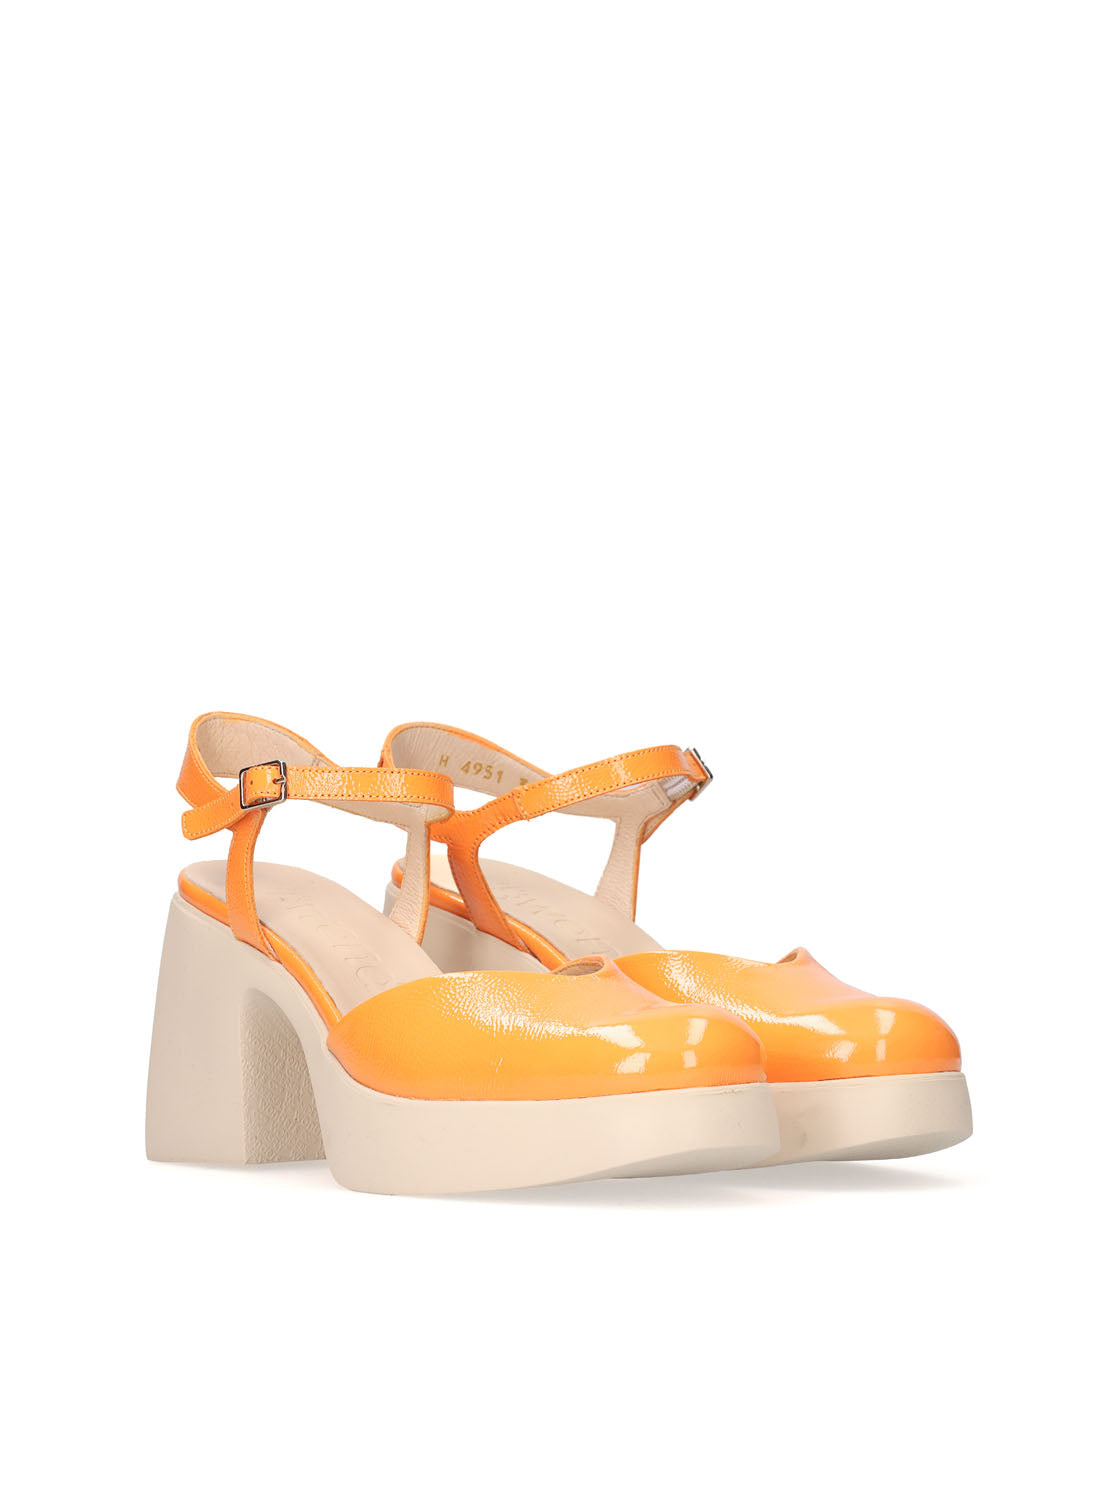 Zapato confort piel efecto charol naranja